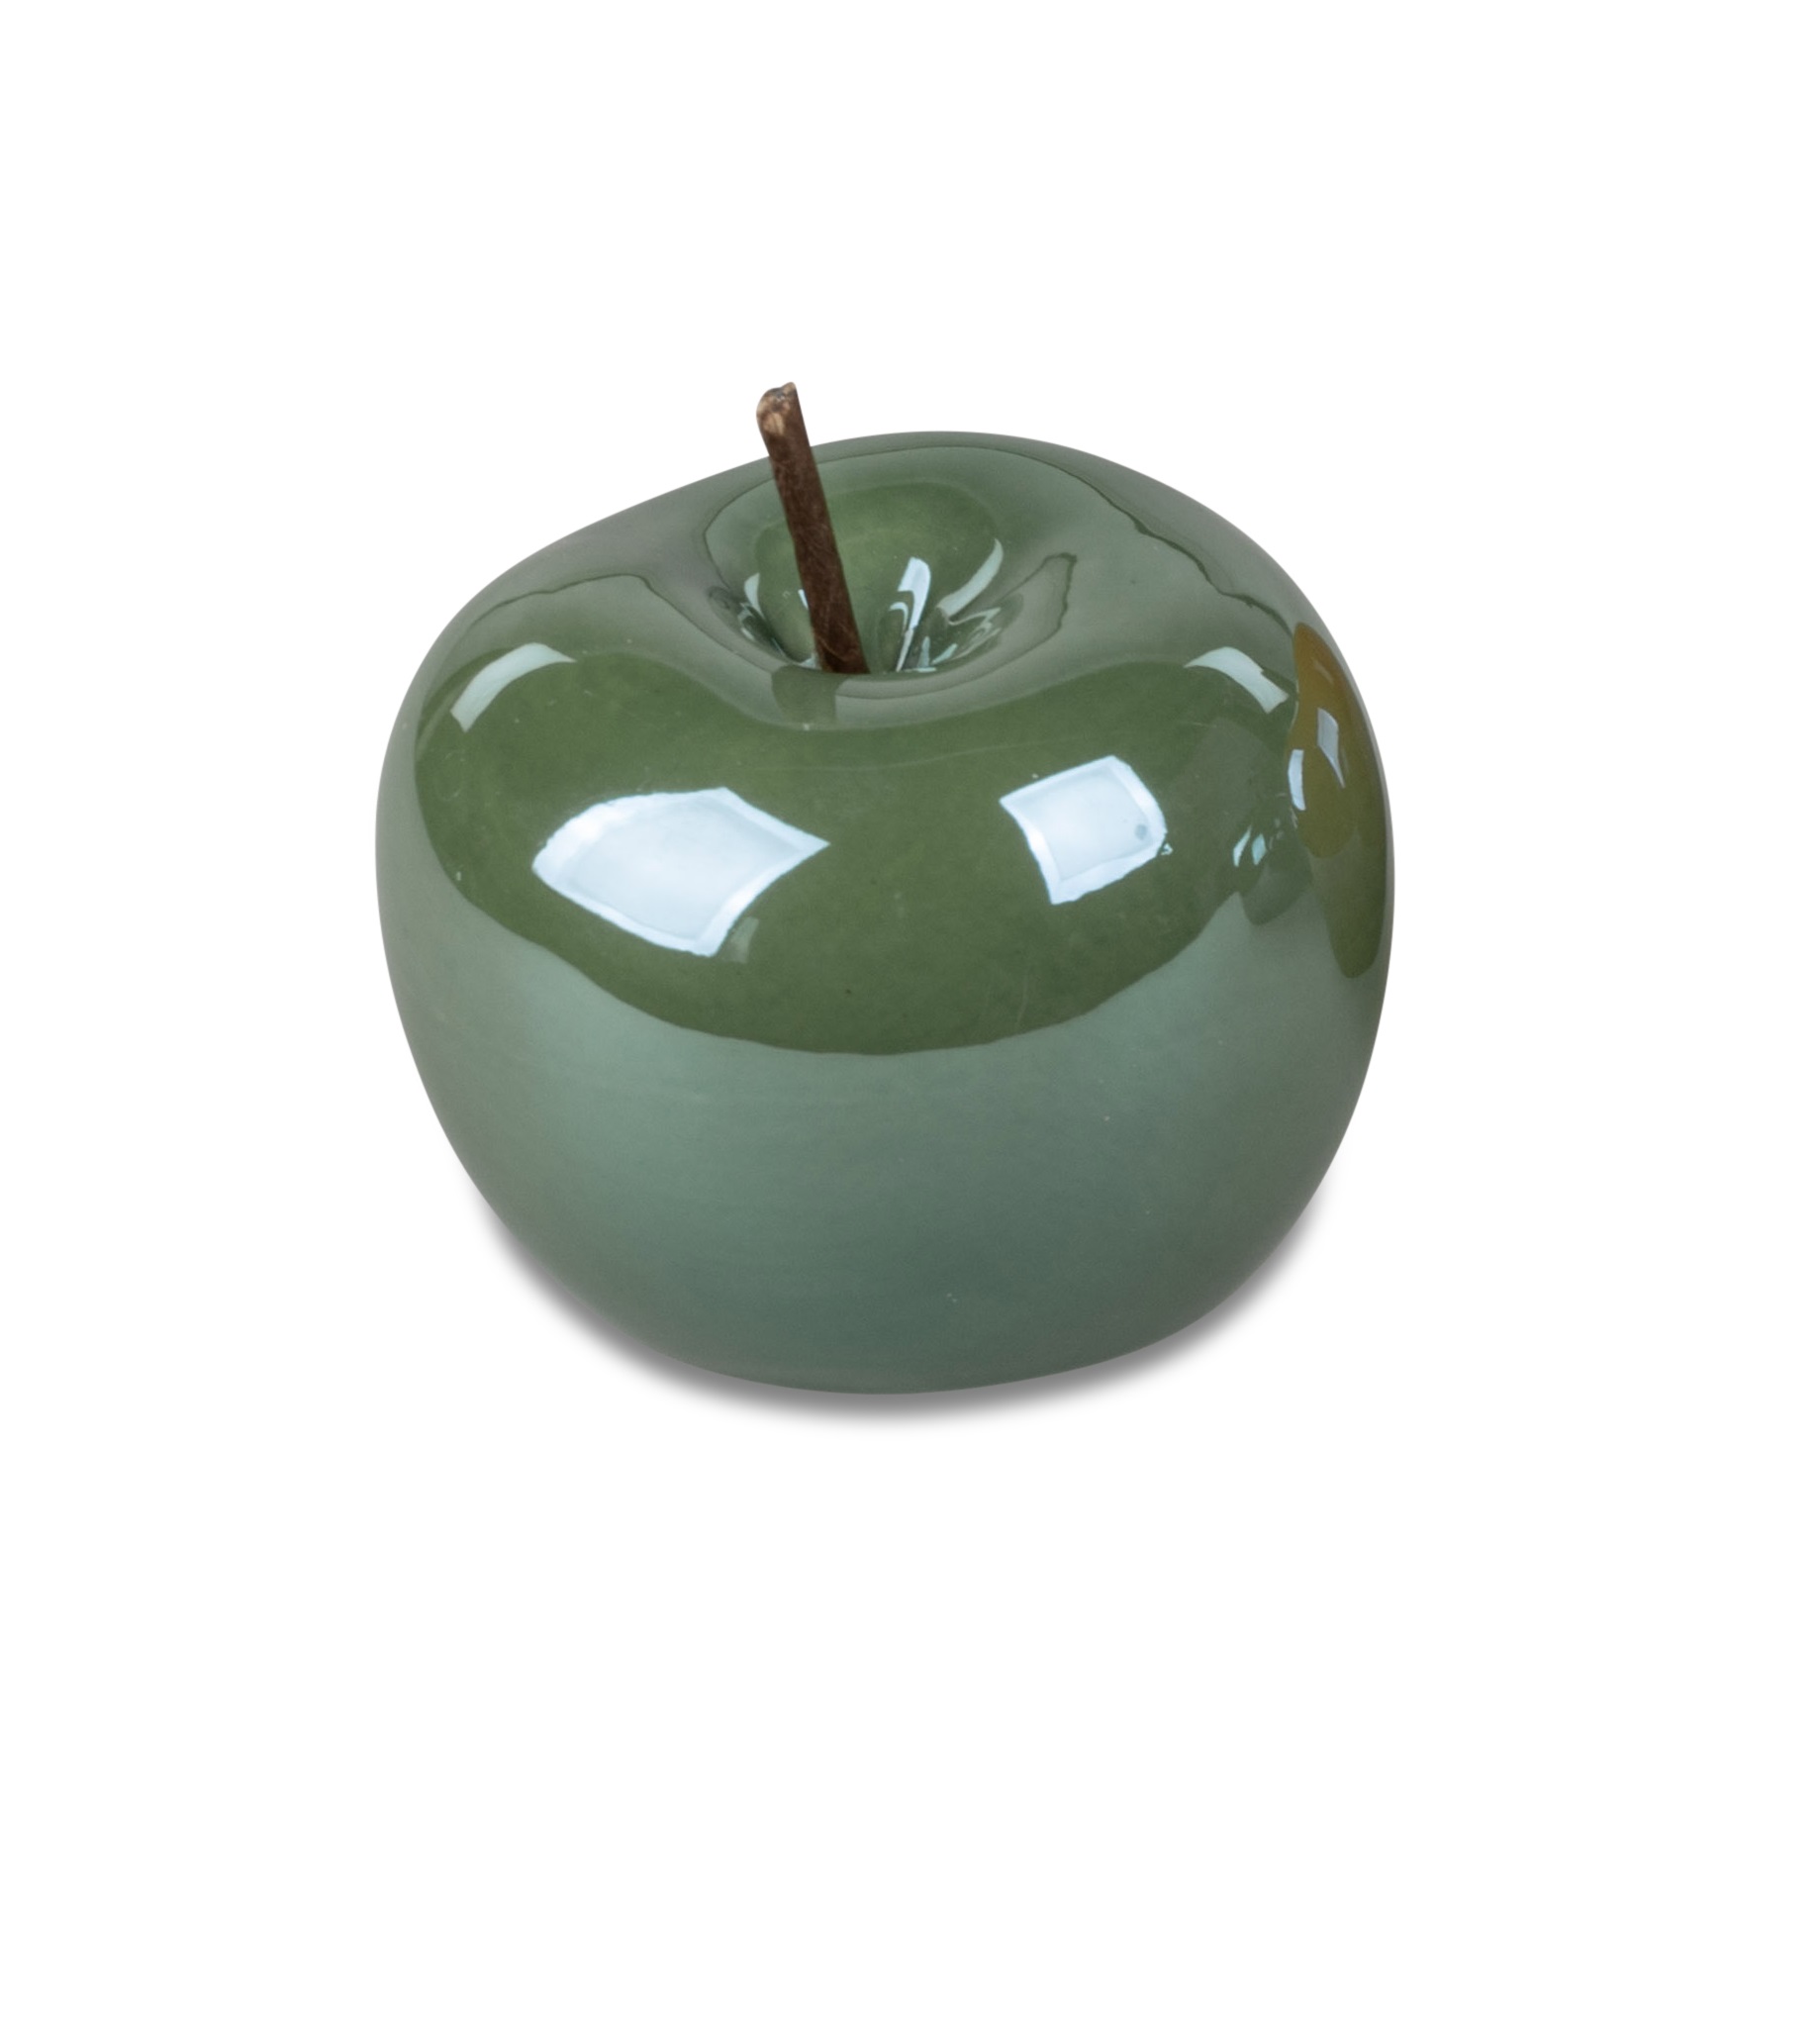 Deko-Objekt Apfel 8 cm Lüster Trend grün Deko Apfel Tischdekor Formano